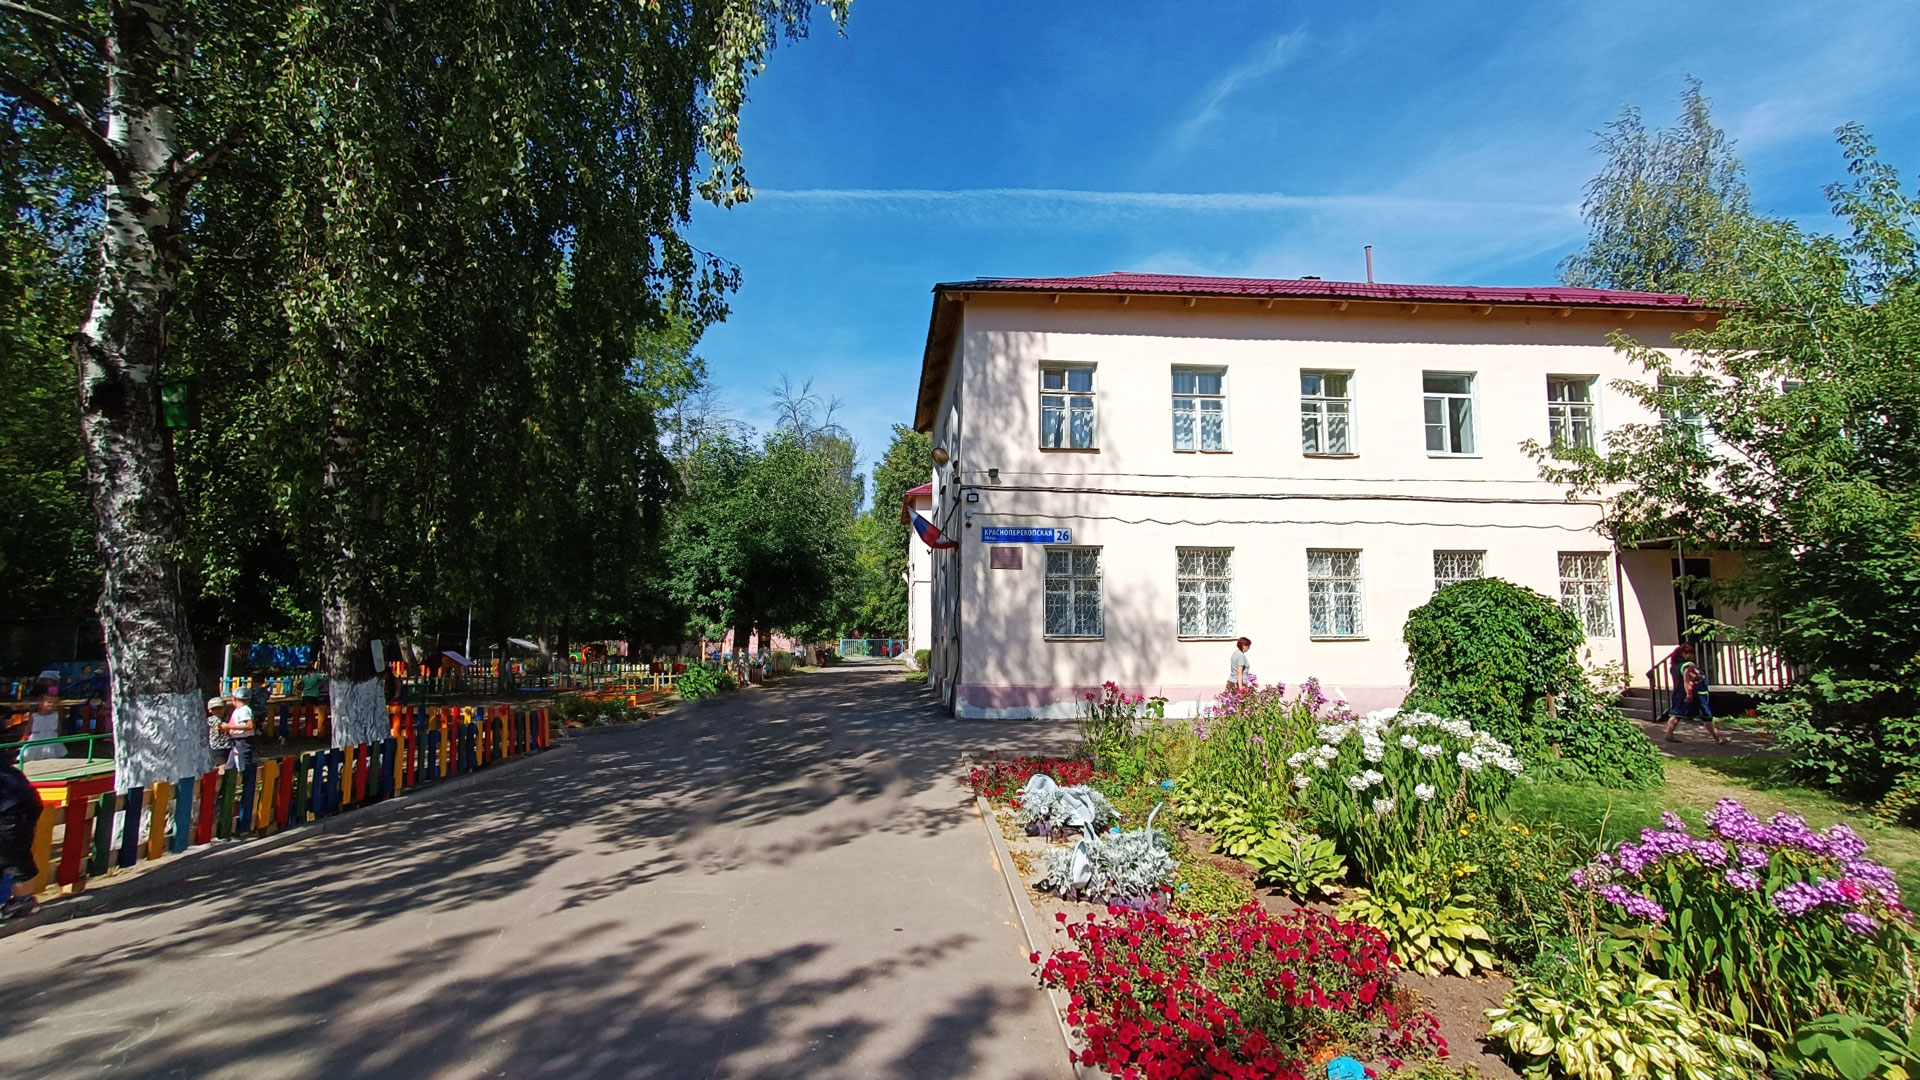 Детский сад 48 Ярославль: общий вид здания.